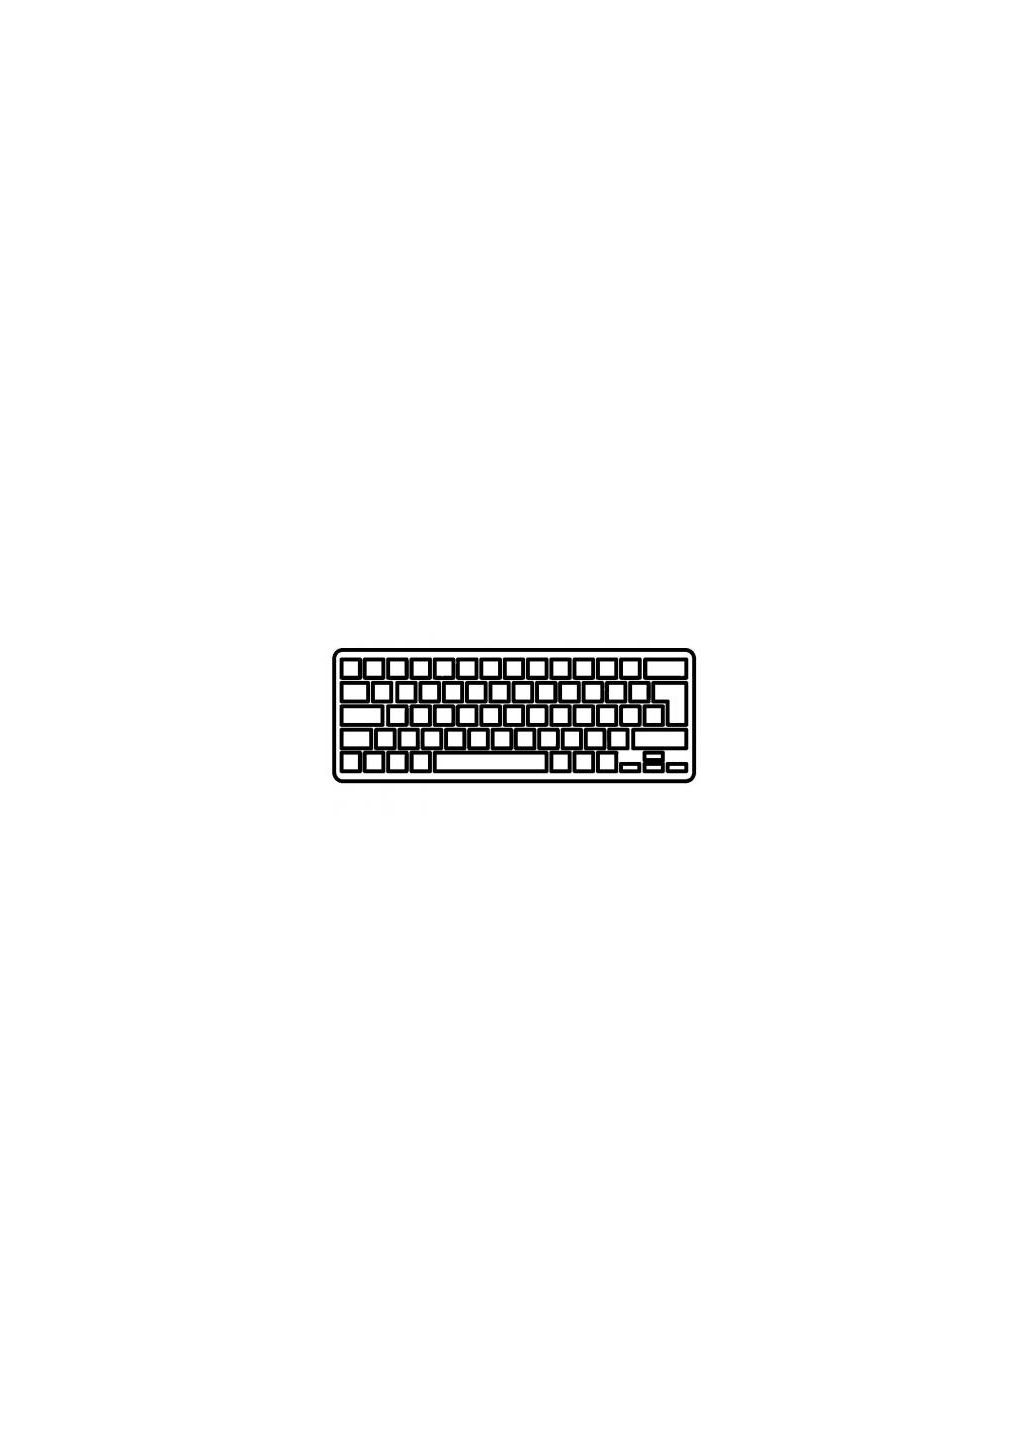 Клавиатура ноутбука (A43050) Dell studio 1555/1557 черная ru (276708024)